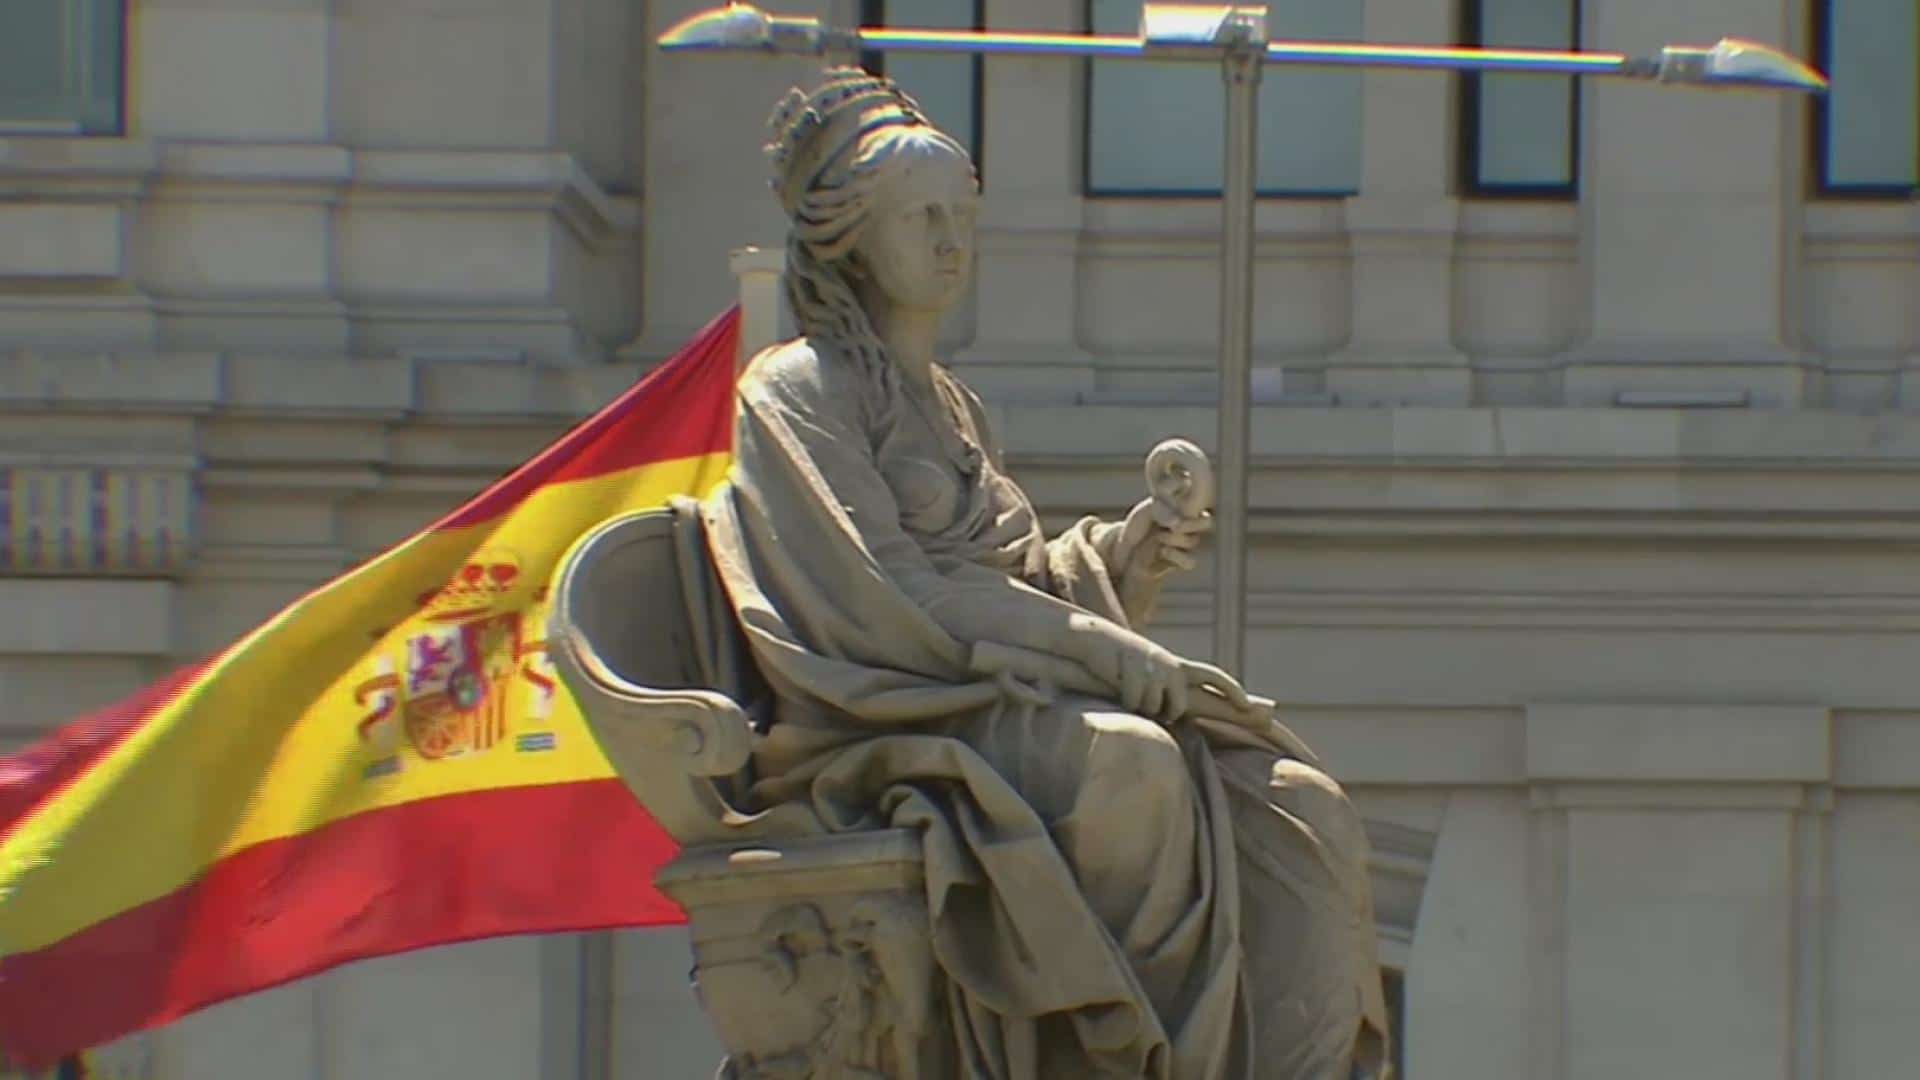 organizaciones espanolas piden a amlo cesar campanas de descredito contra la prensa